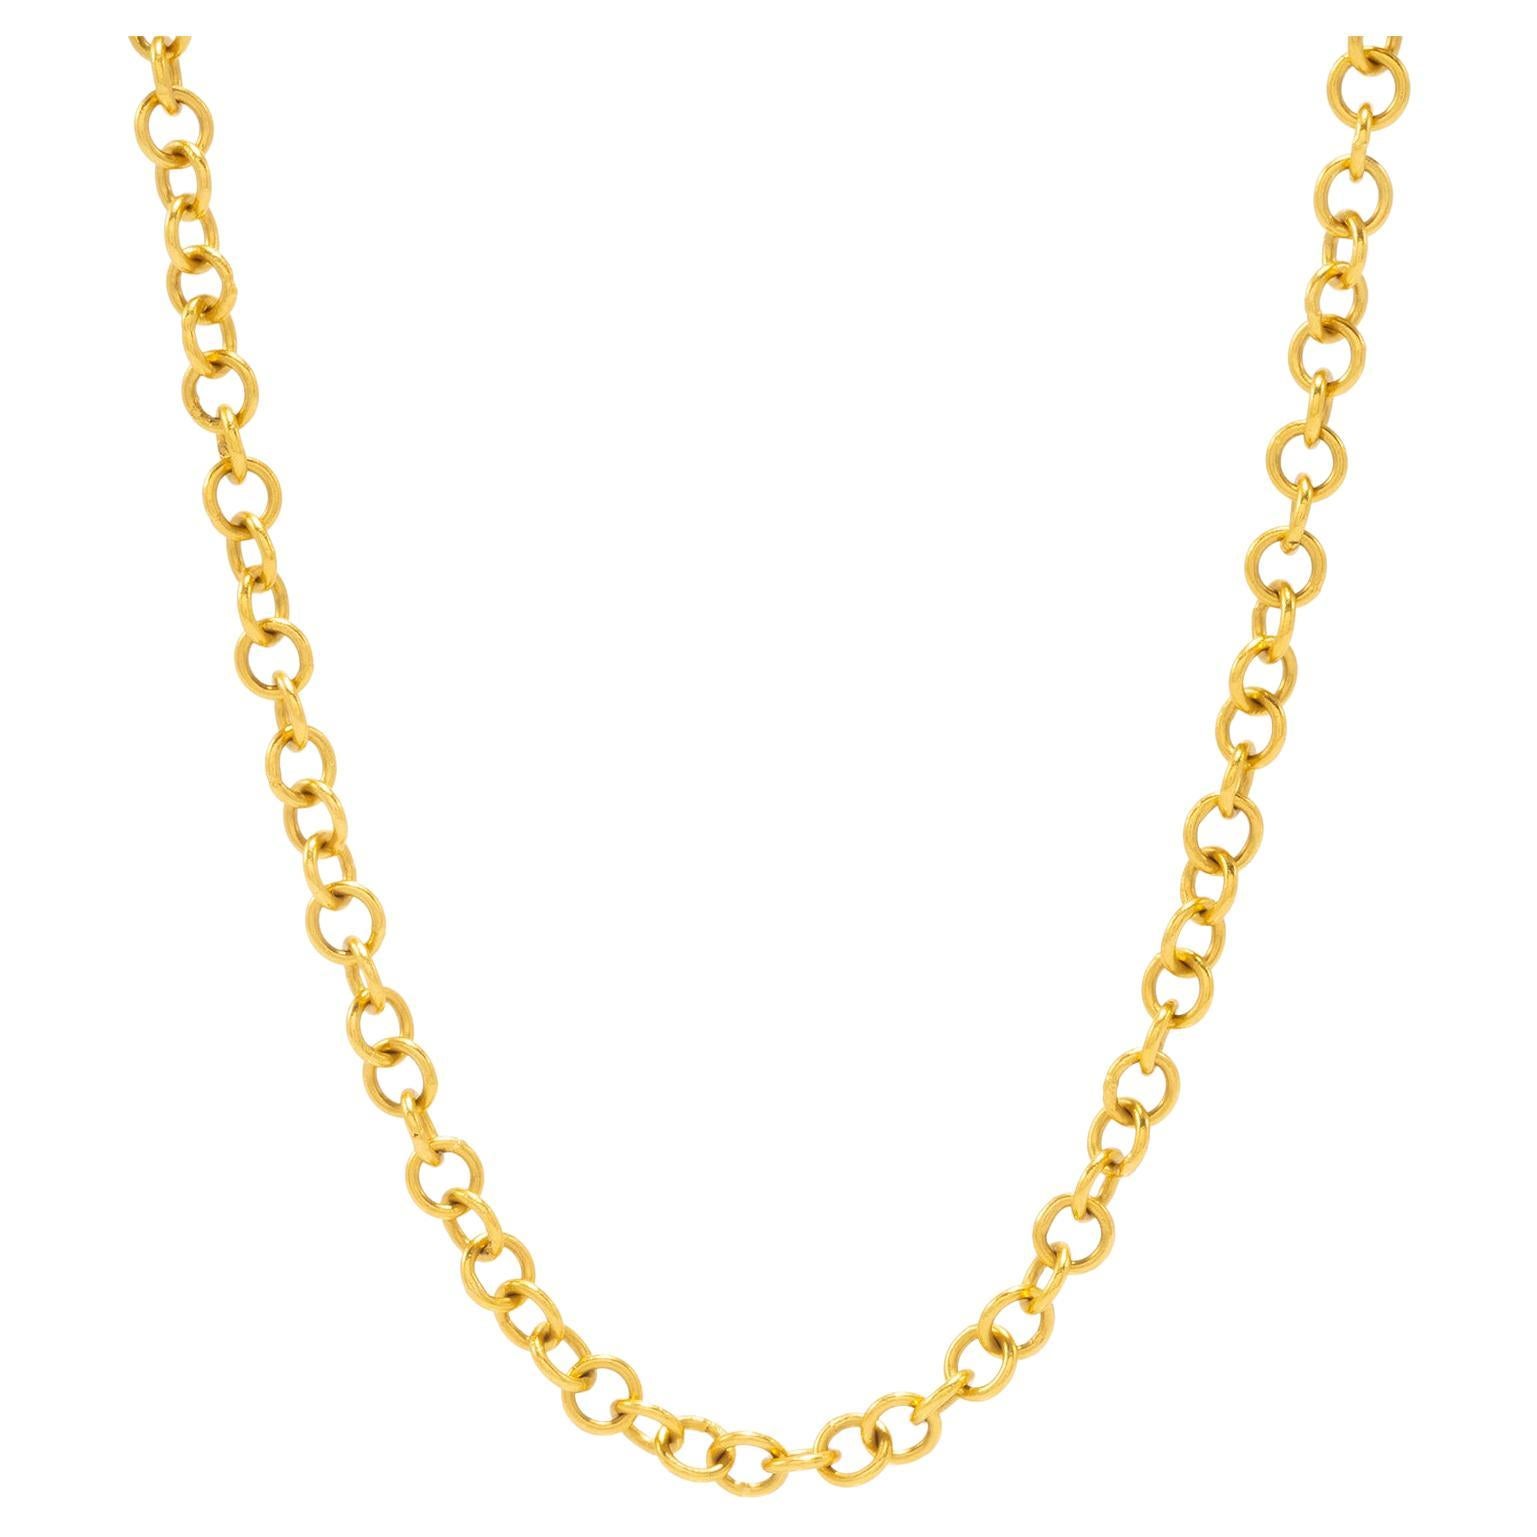 22 Karat Gold handgefertigte Kabelkette 24" lang, von Tagili Designs